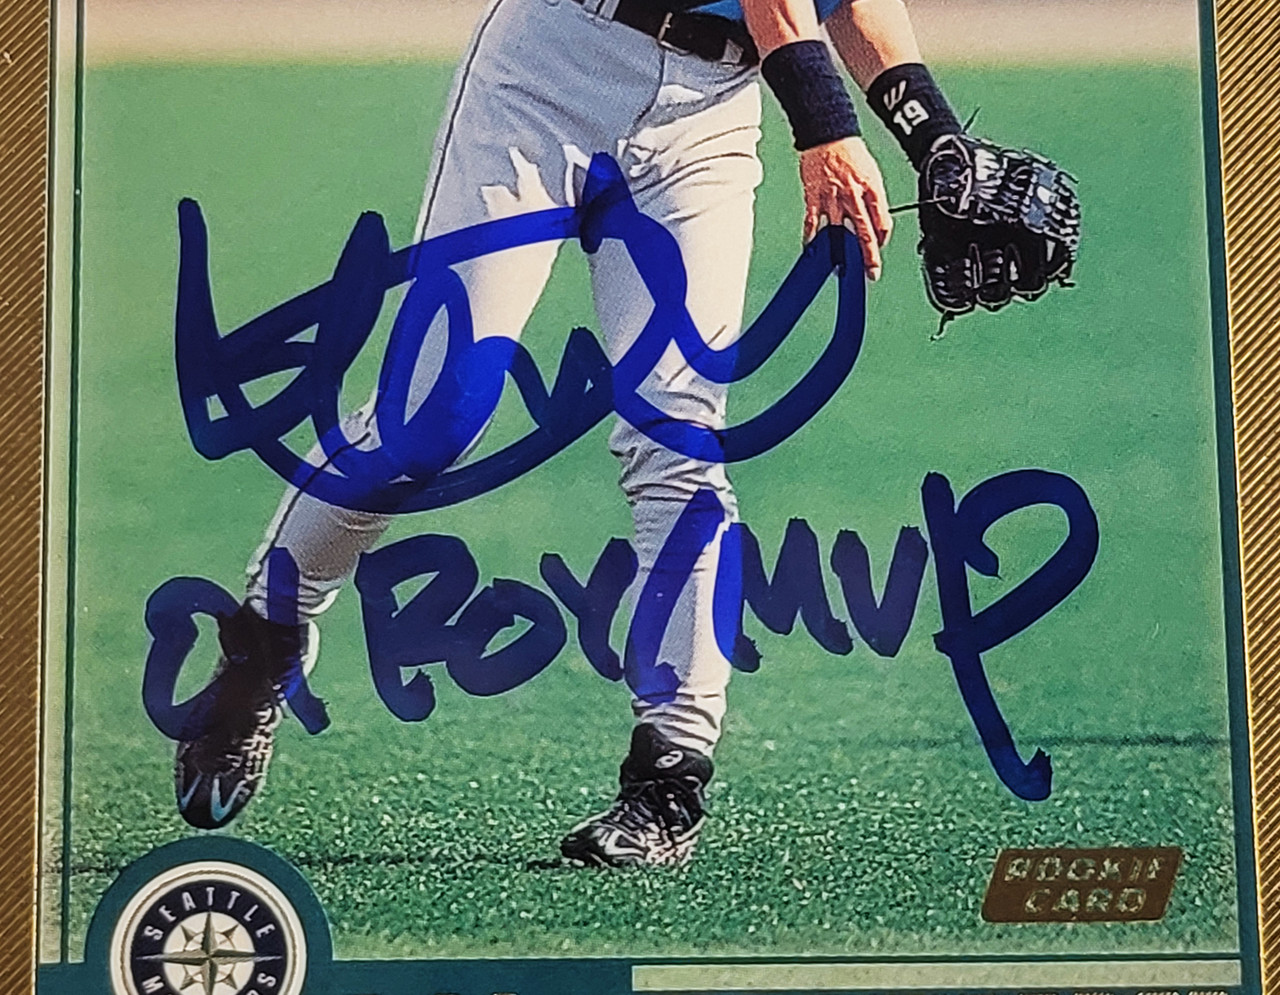 Lot - (NM) 2001 Topps Ichiro Suzuki Rookie #726 Baseball Card